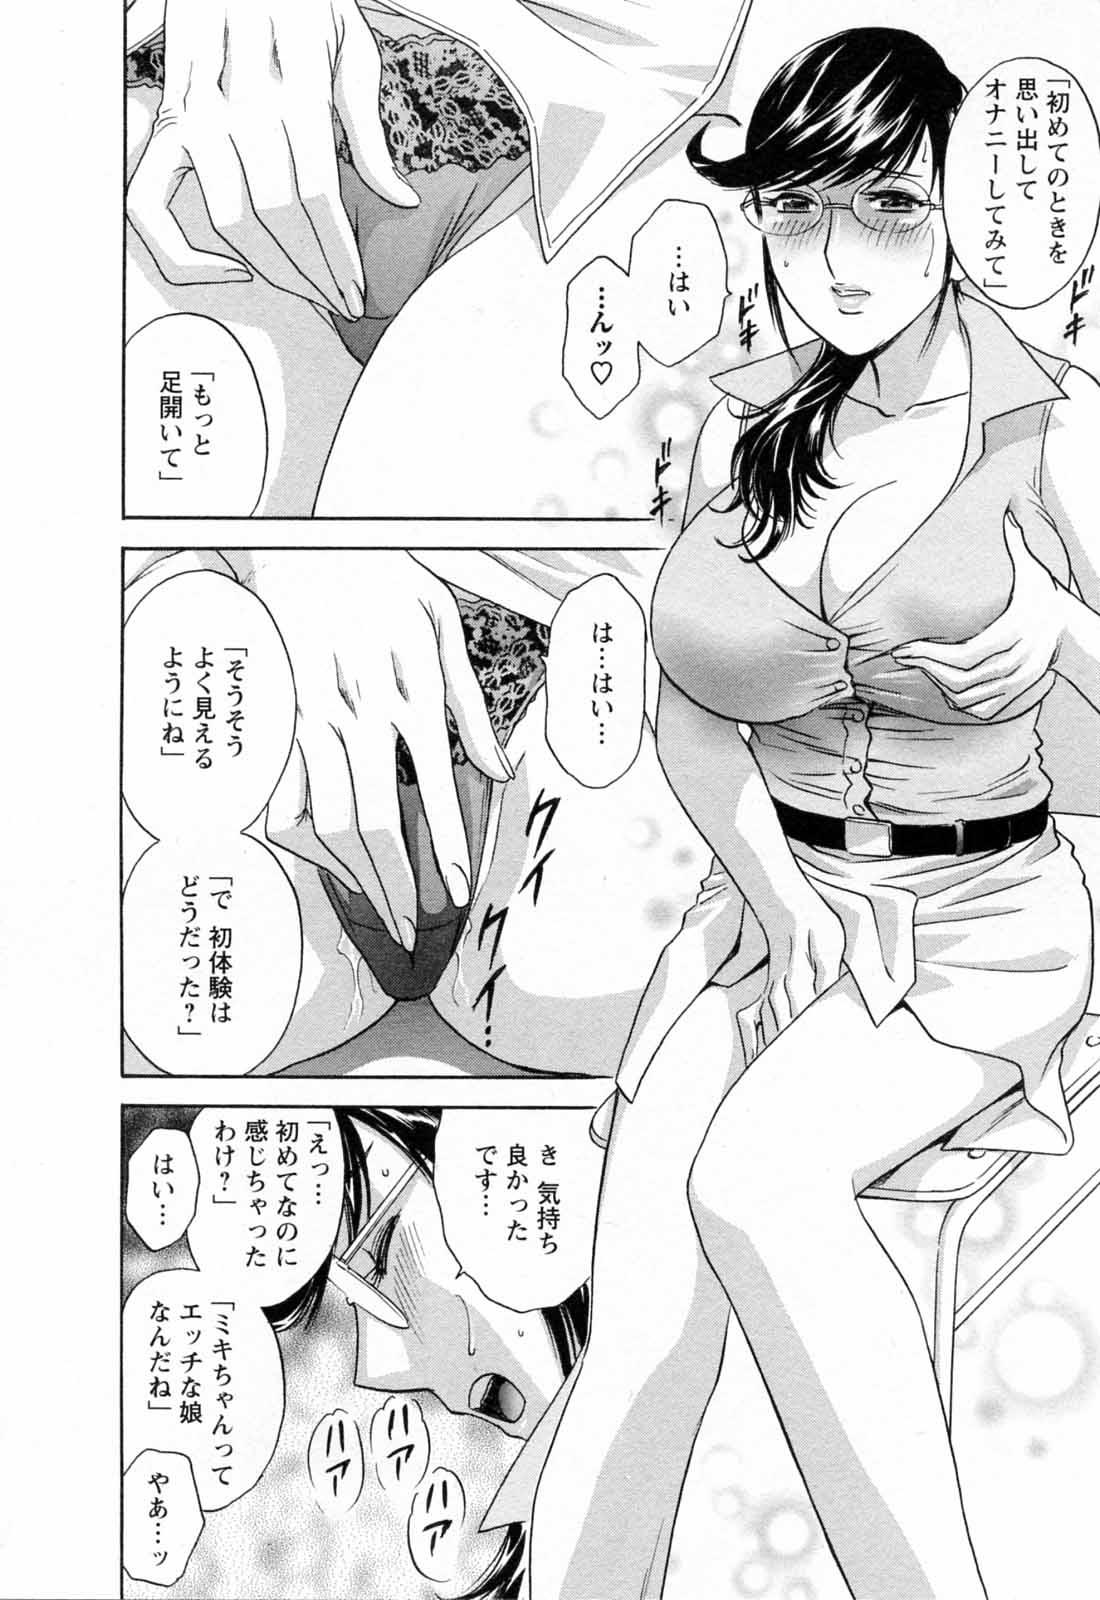 [Hidemaru] Mo-Retsu! Boin Sensei (Boing Boing Teacher) Vol.5 103